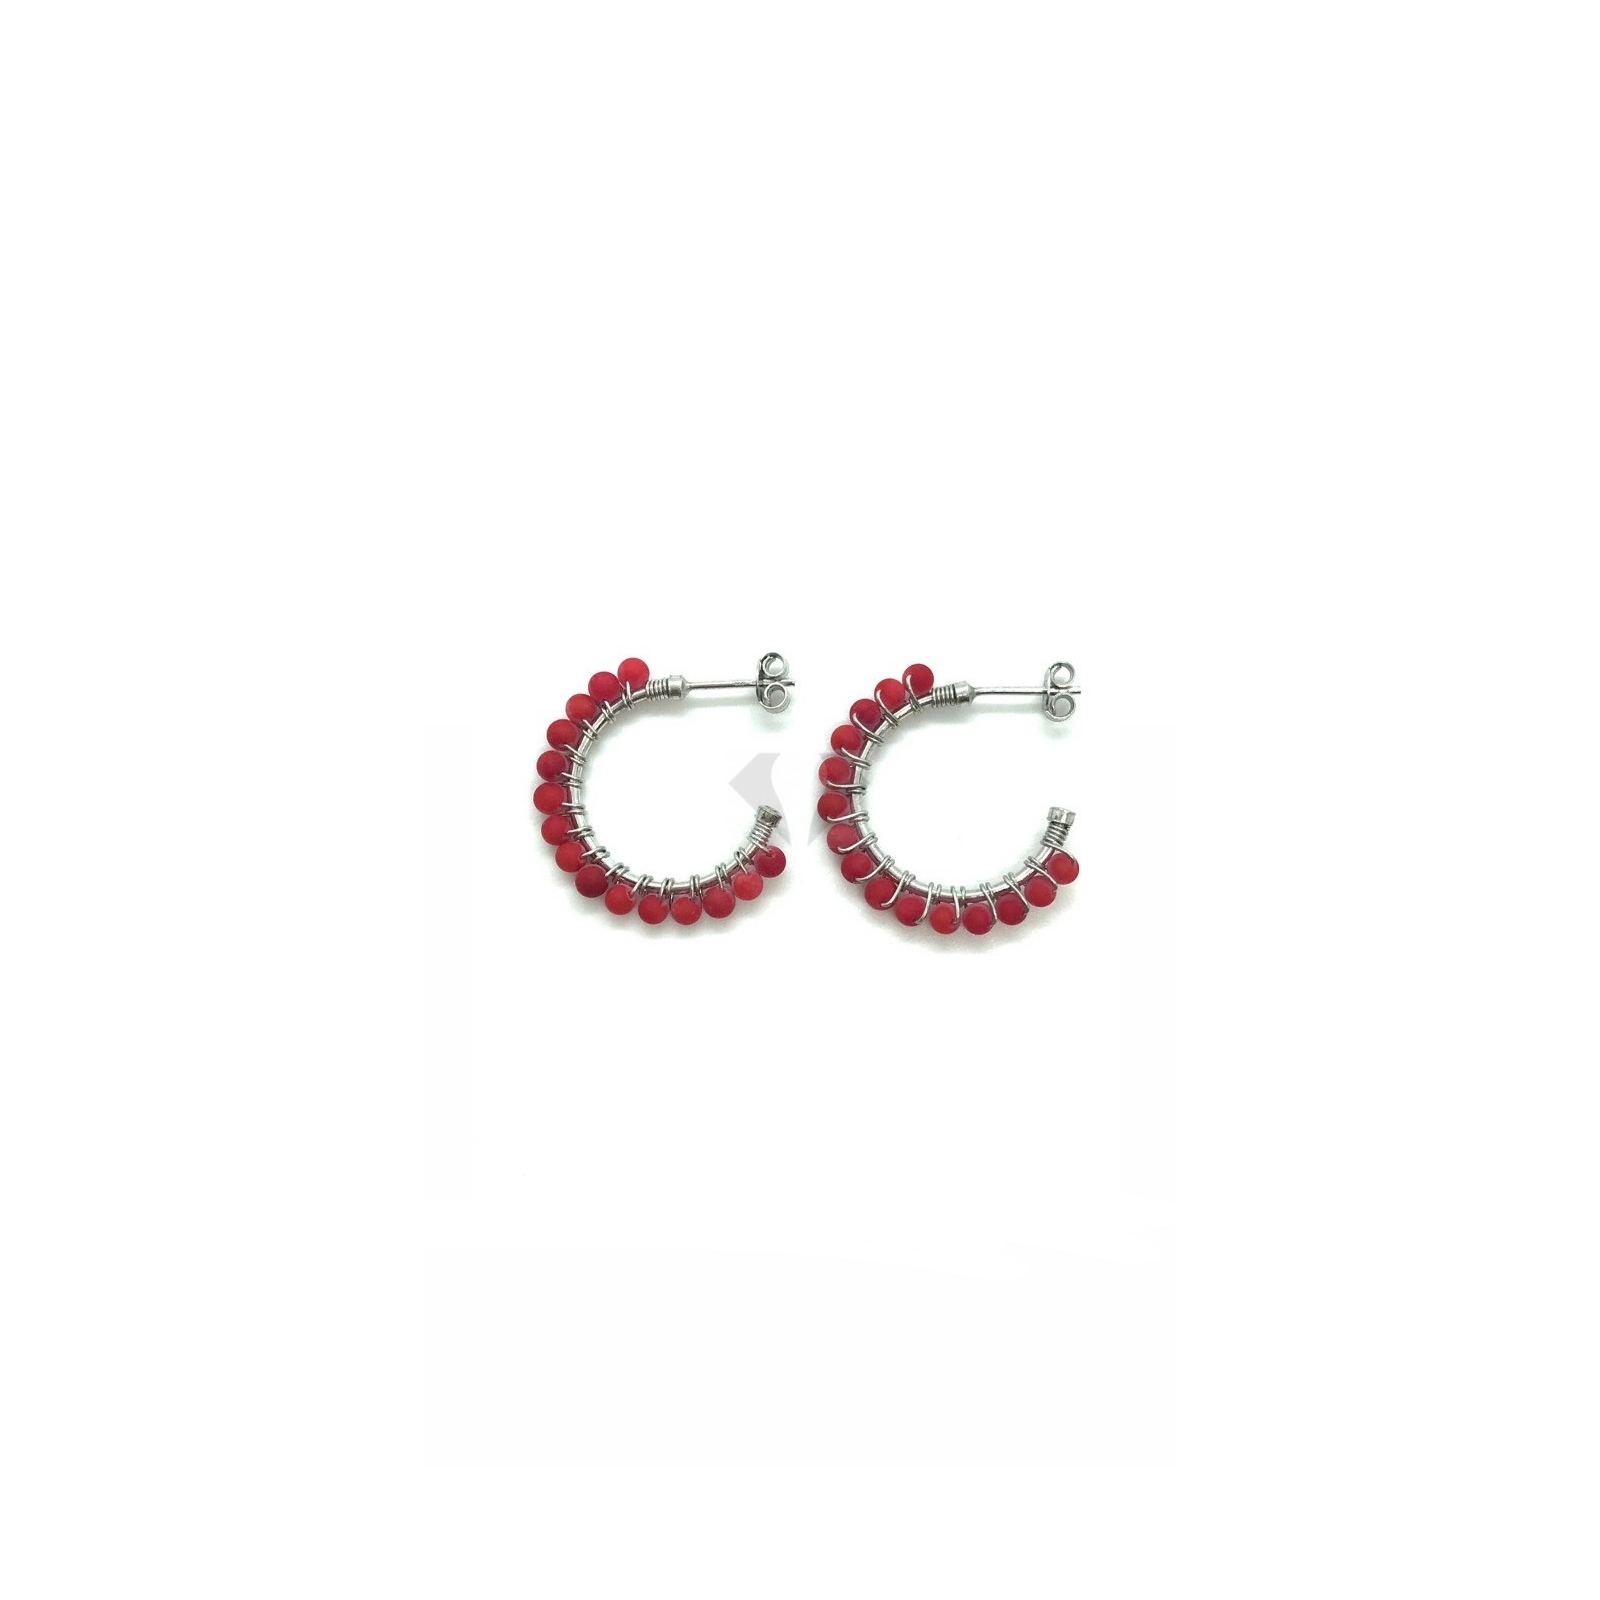 cerchietti perle mm 23 rosse in argento  925% (prezzo inteso per la coppia )